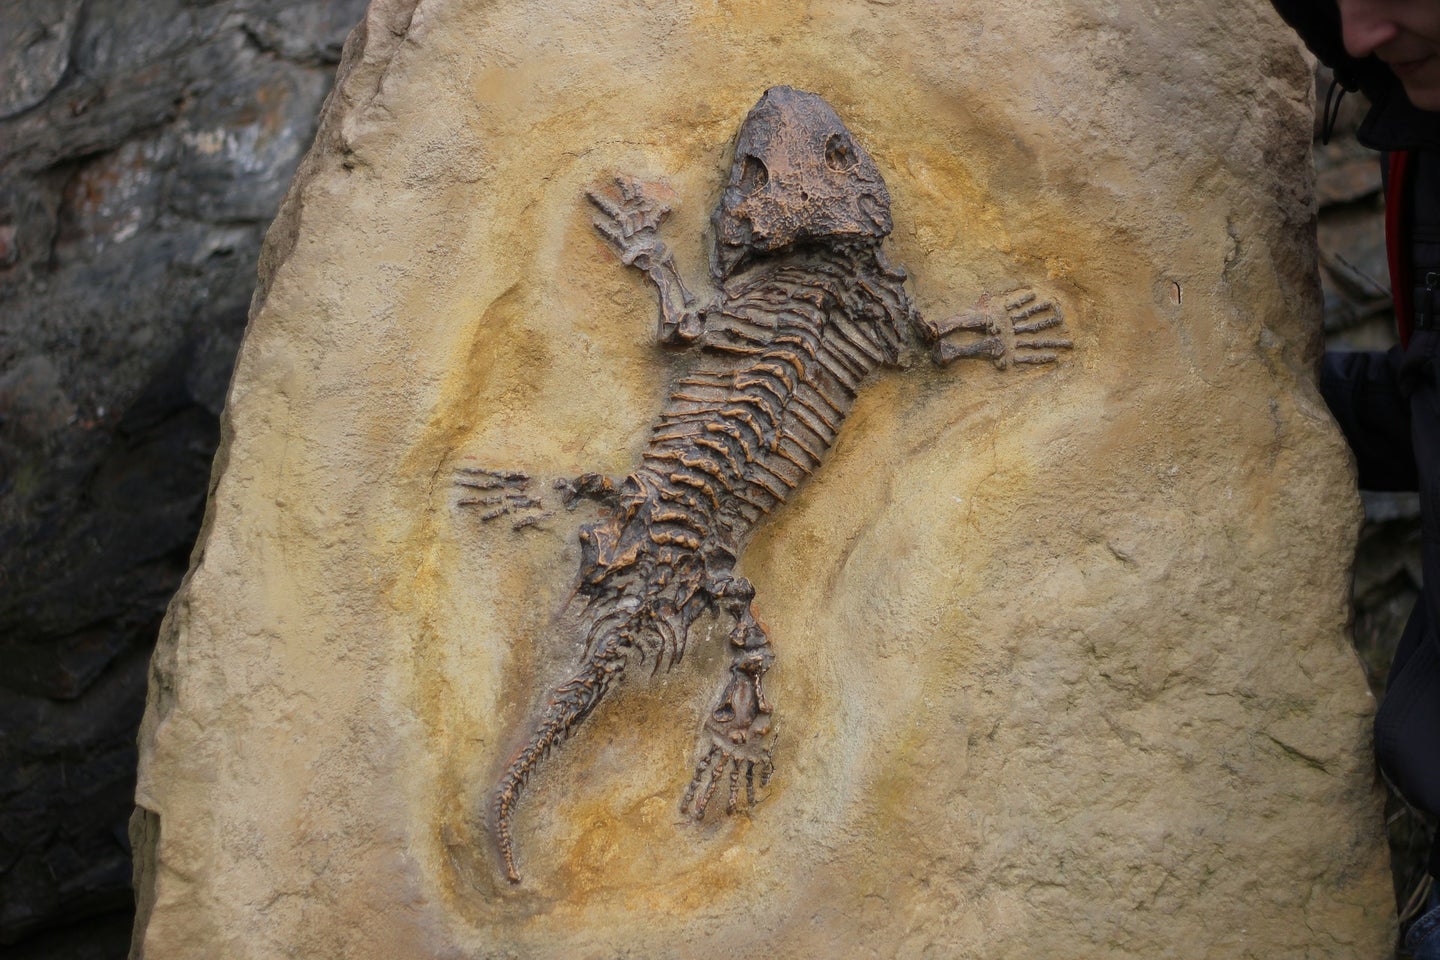 Fossilized lizard